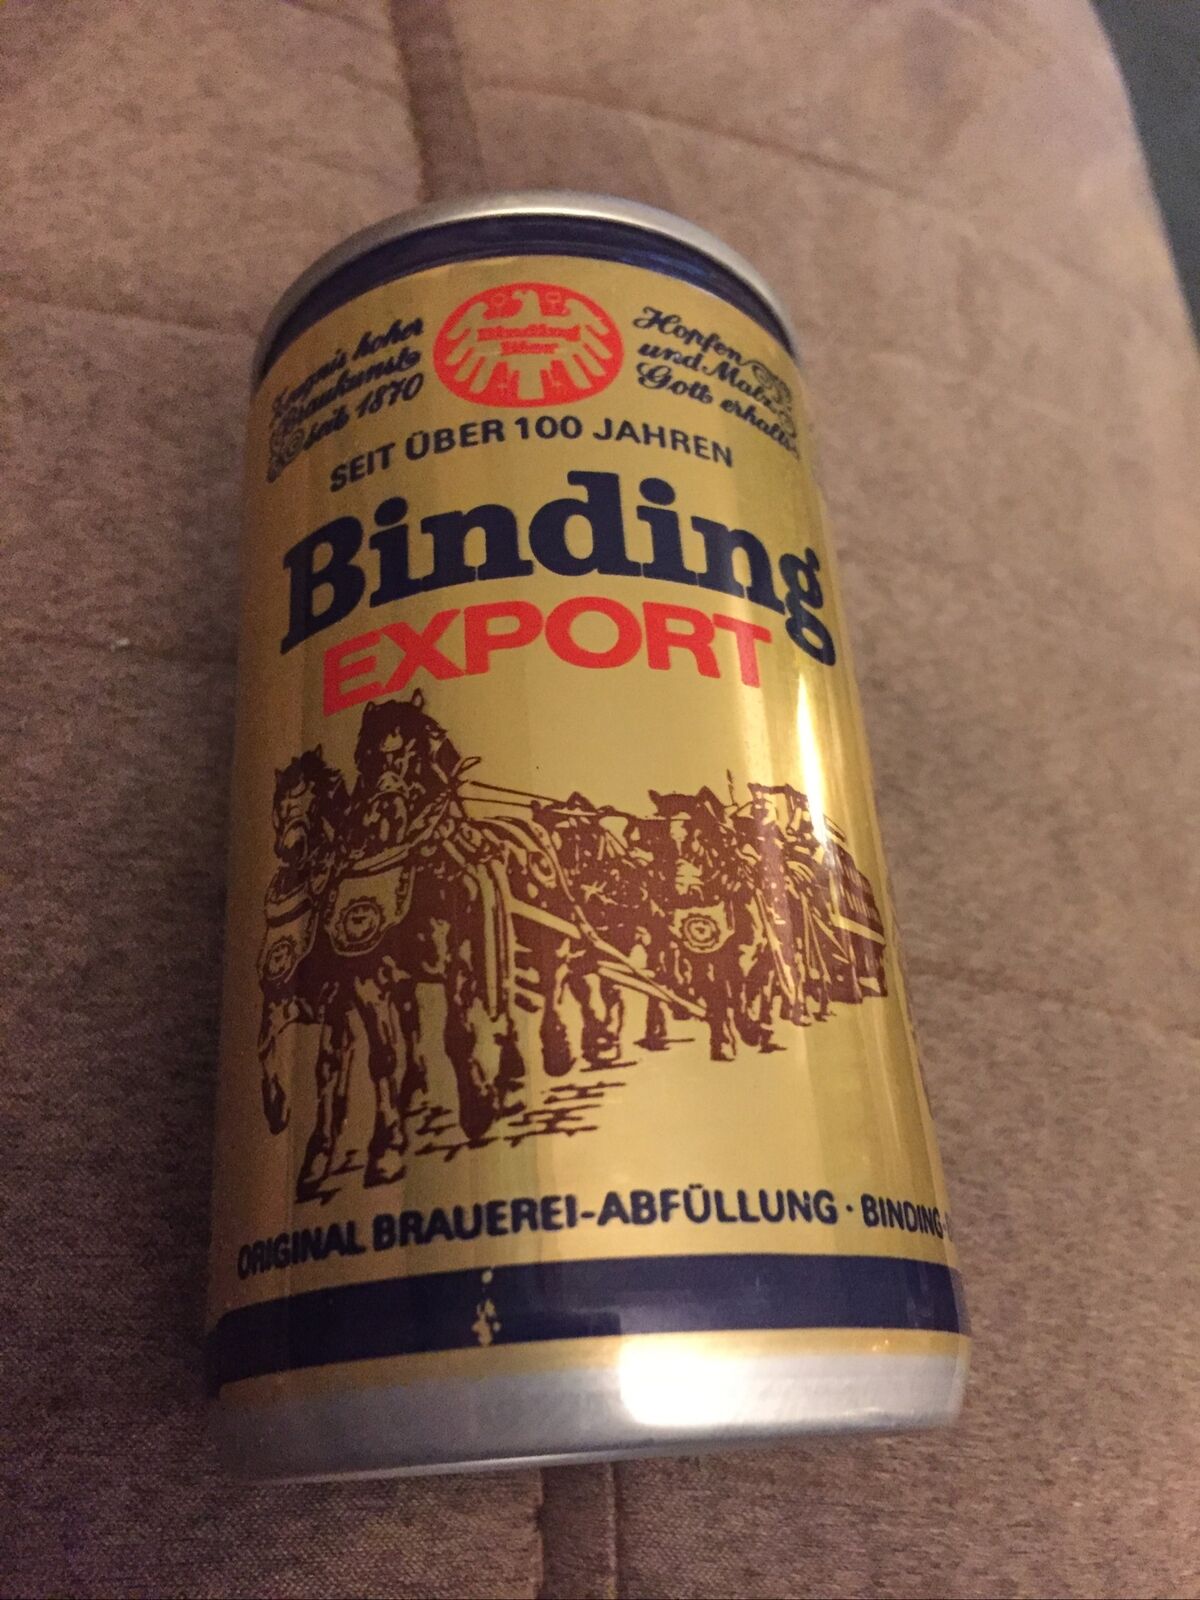 Binding Export Beer can Frankfurt West Germany